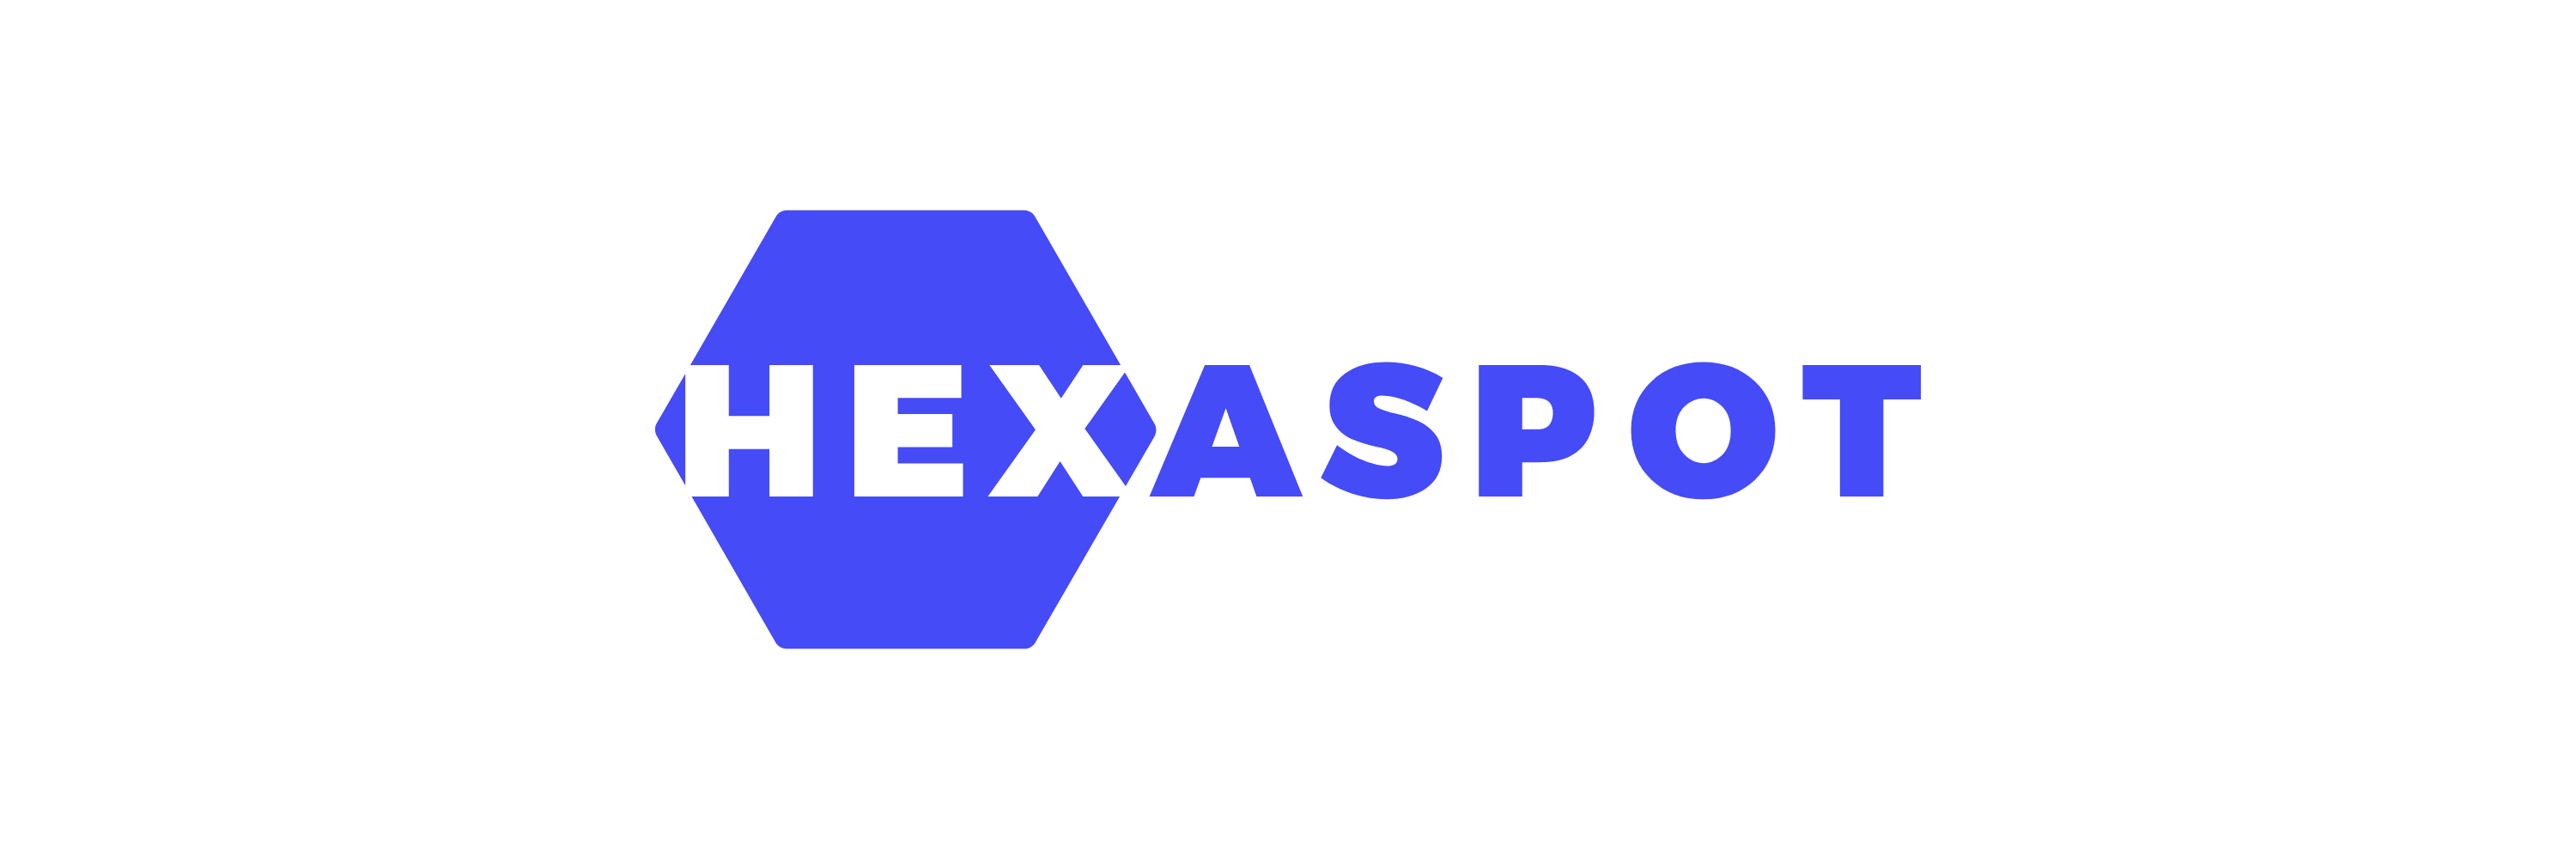 Hexaspot